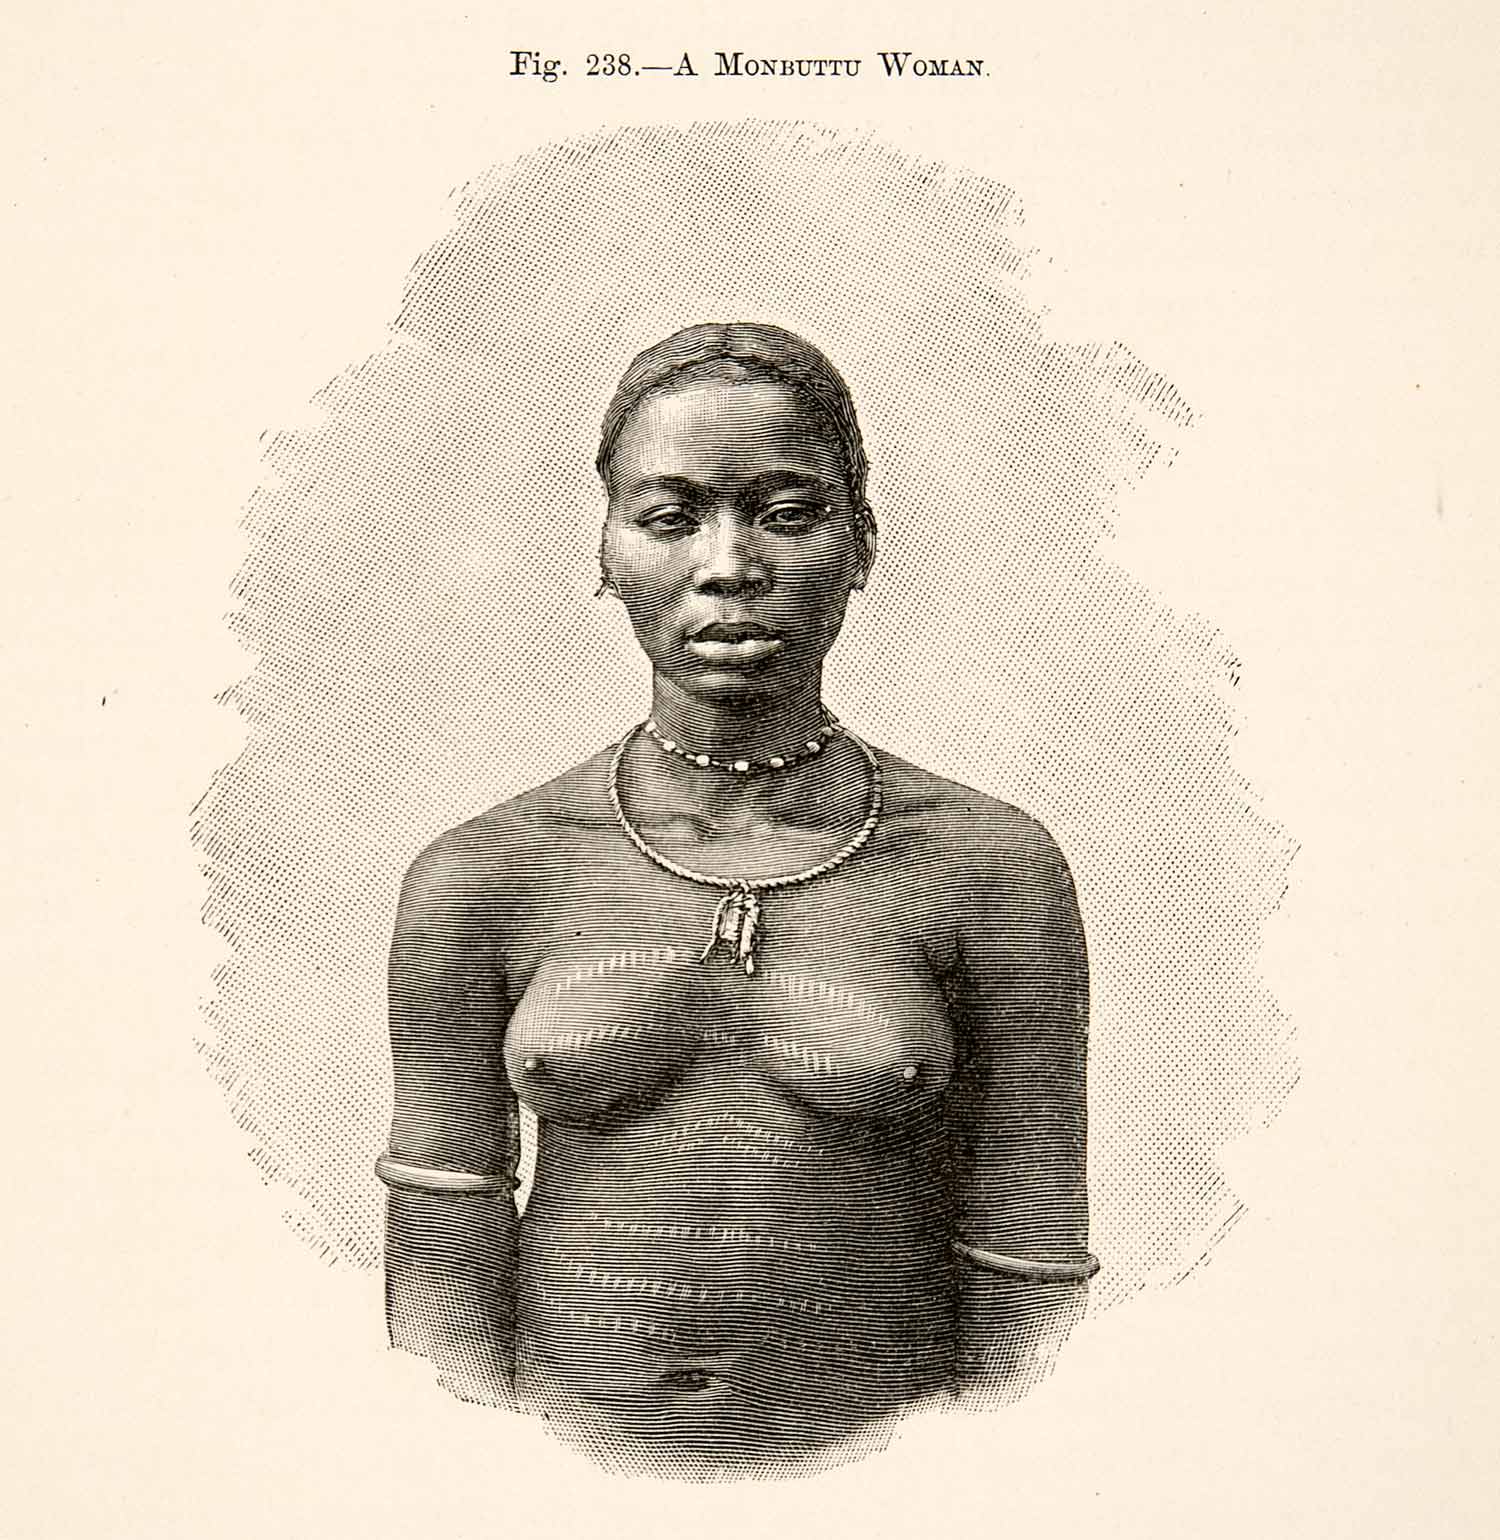 A Monbuttu woman